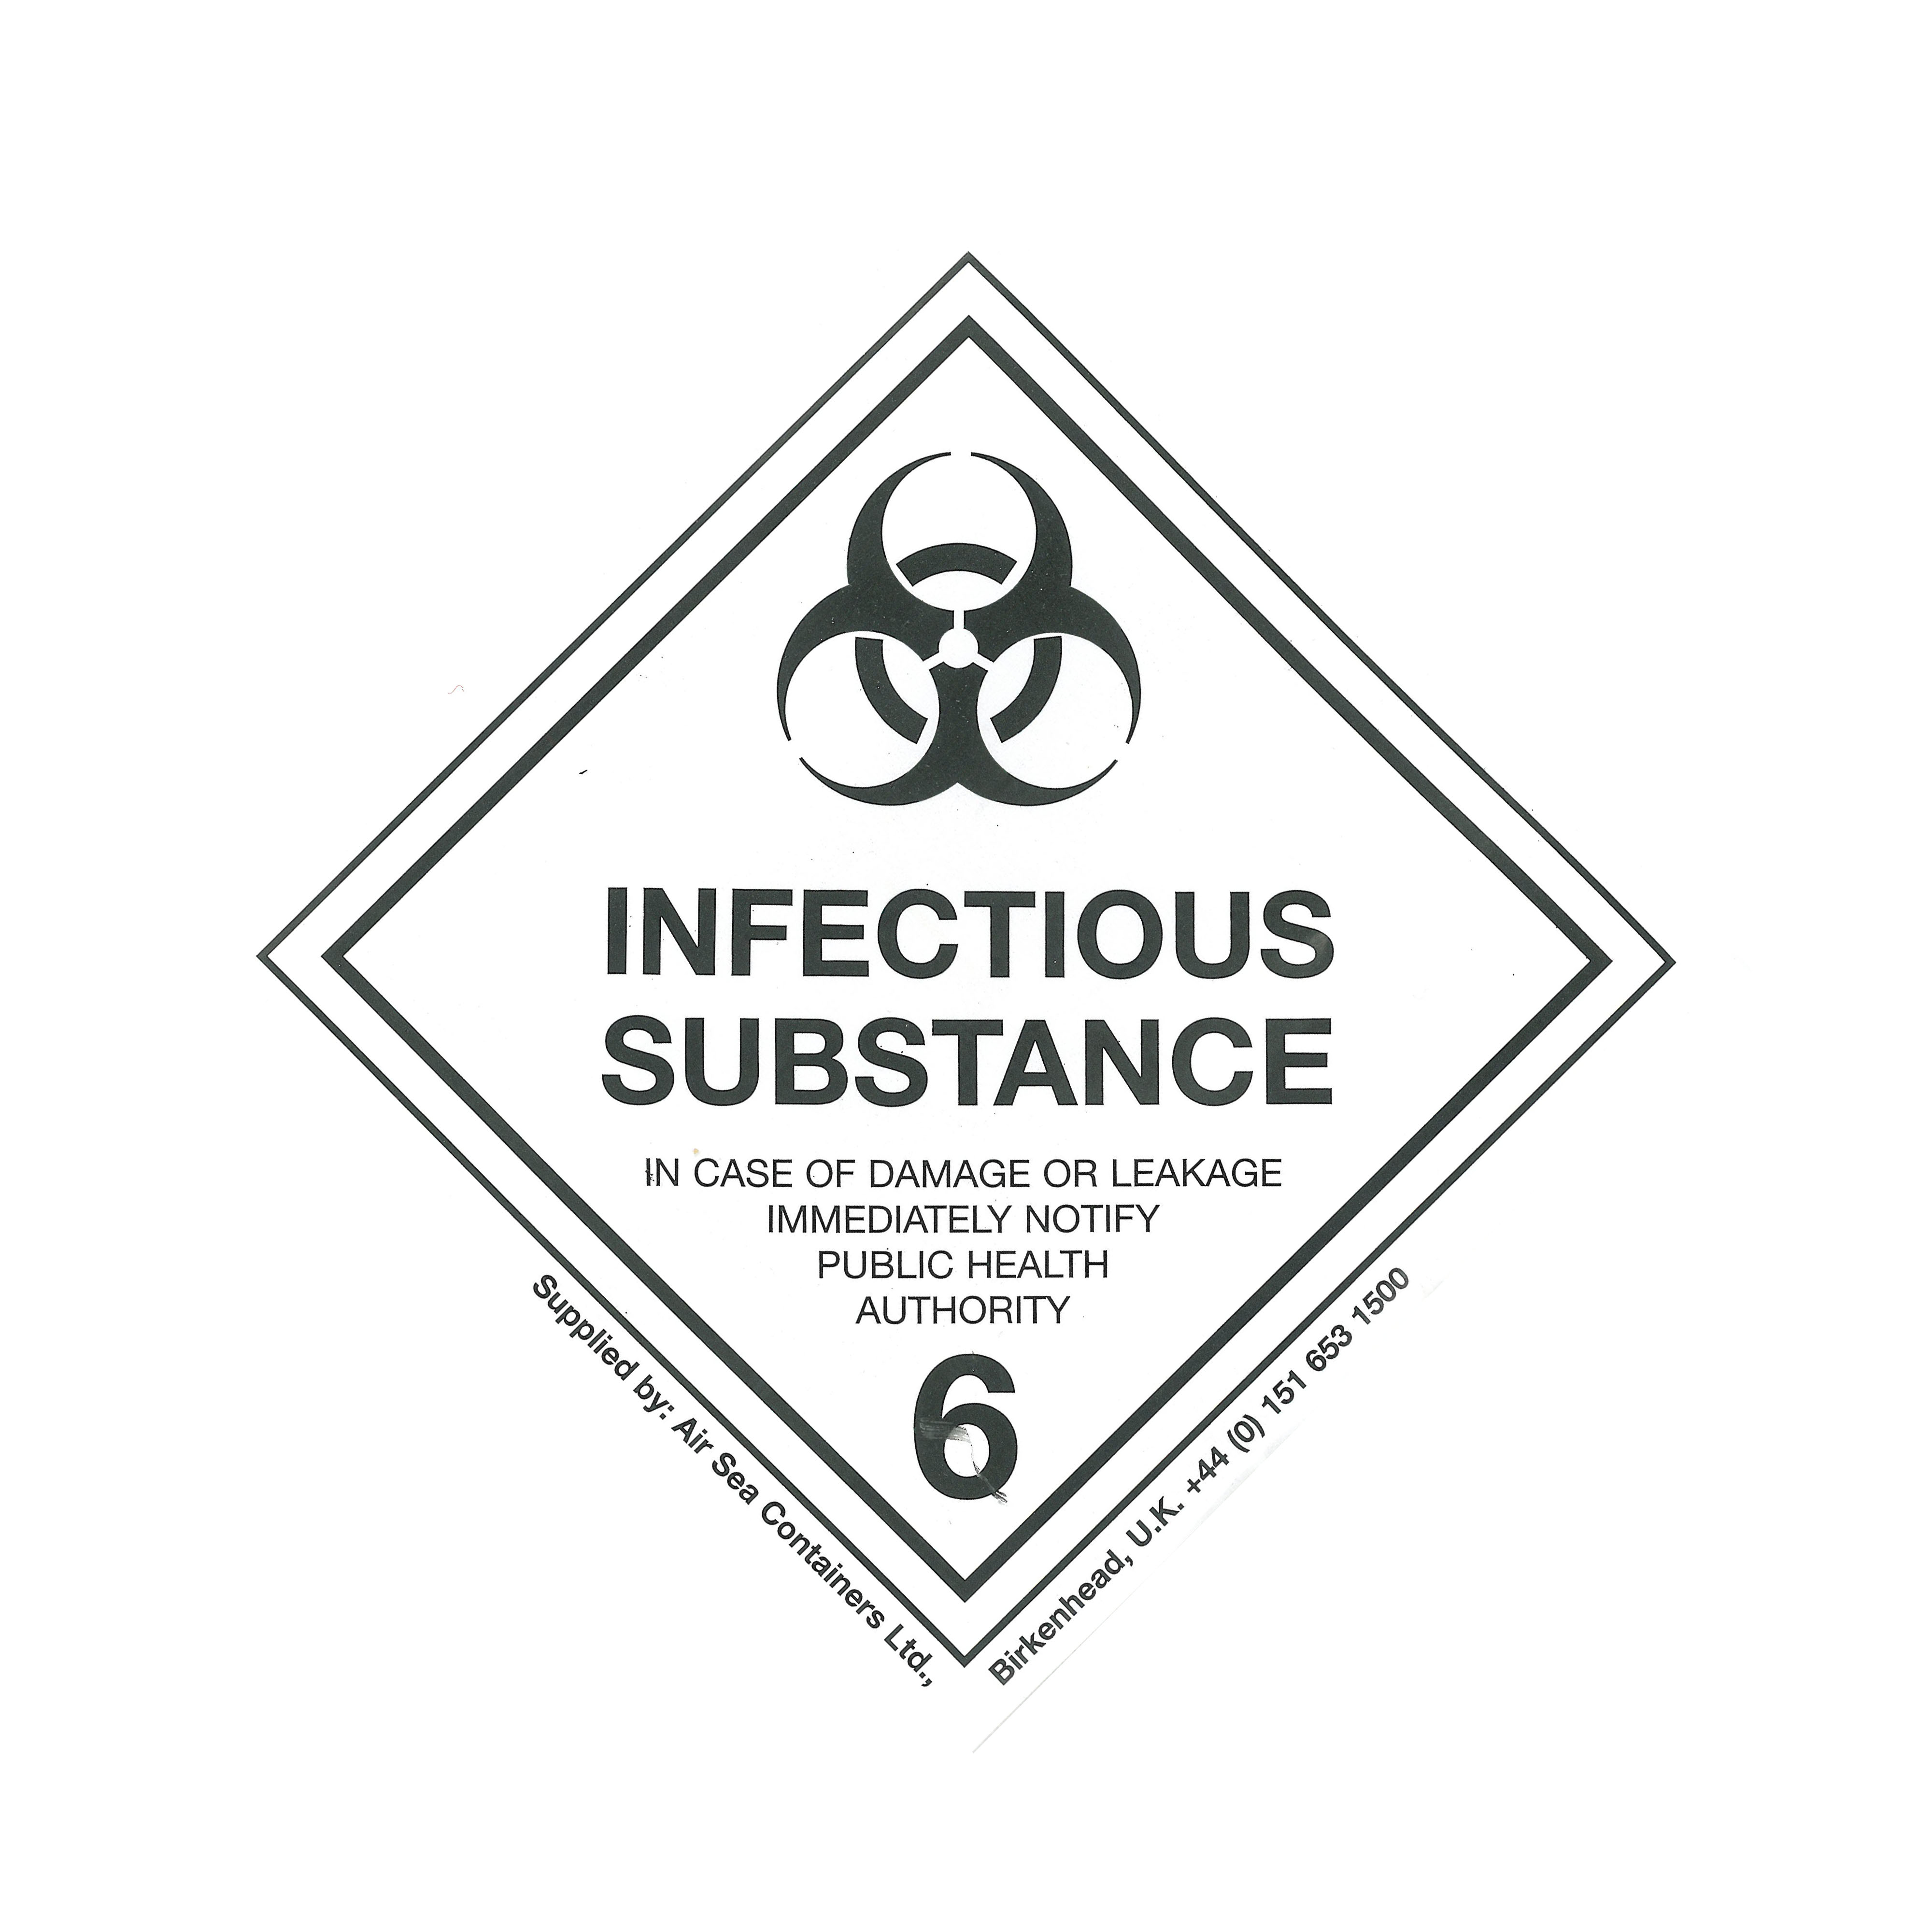 Class 6 2 Infectious Substance Hazard Labels 100mm X 100mm Air